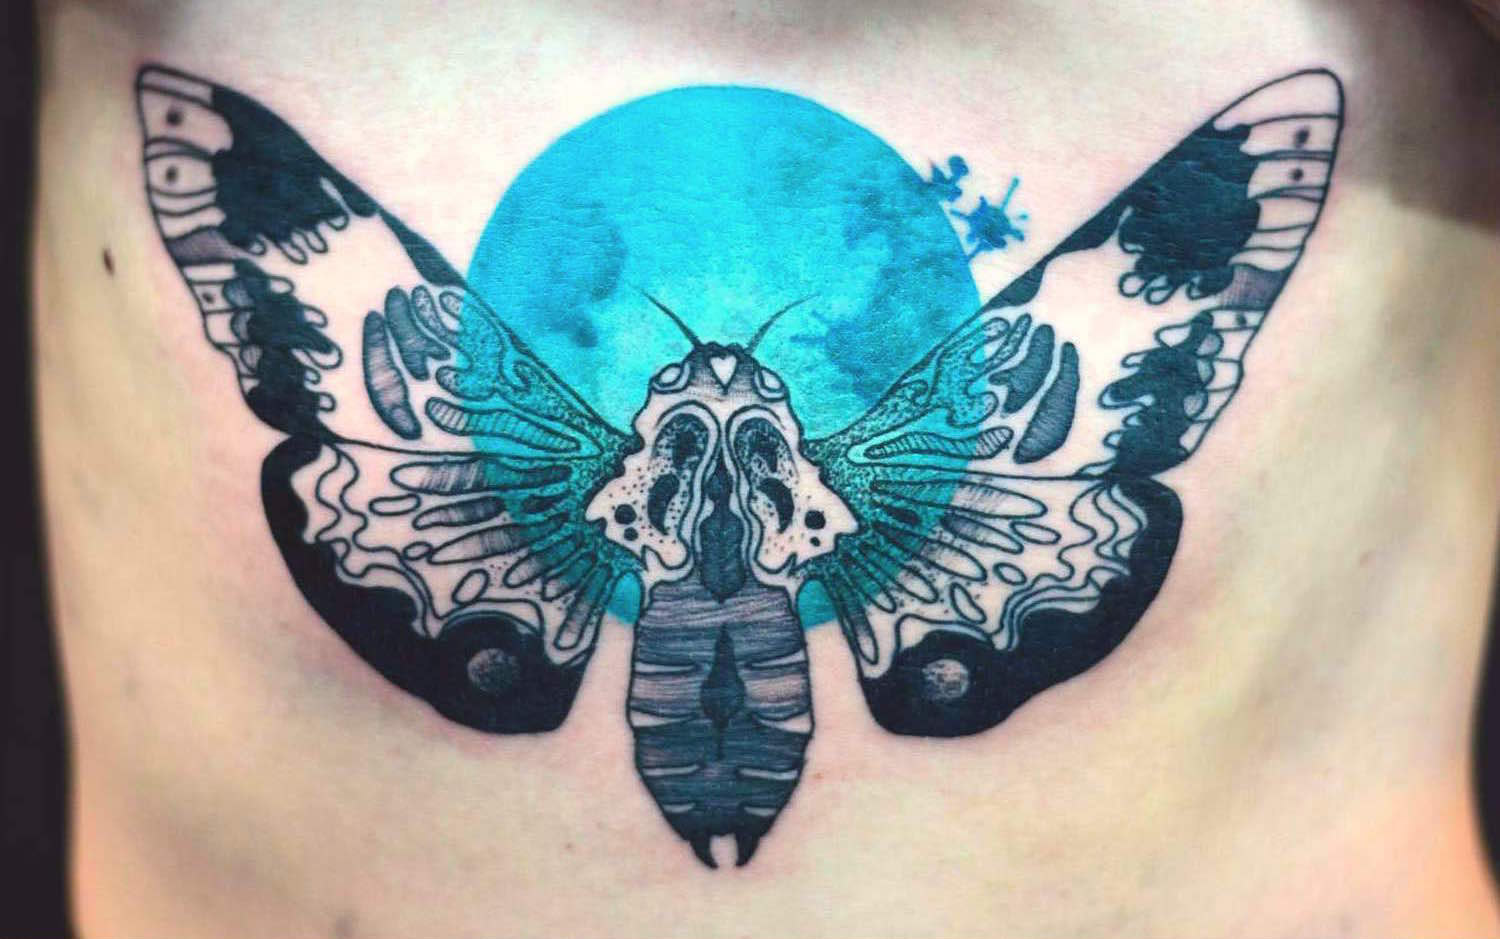 Joanna Swirska dzolama tattoo artist moth tattoo